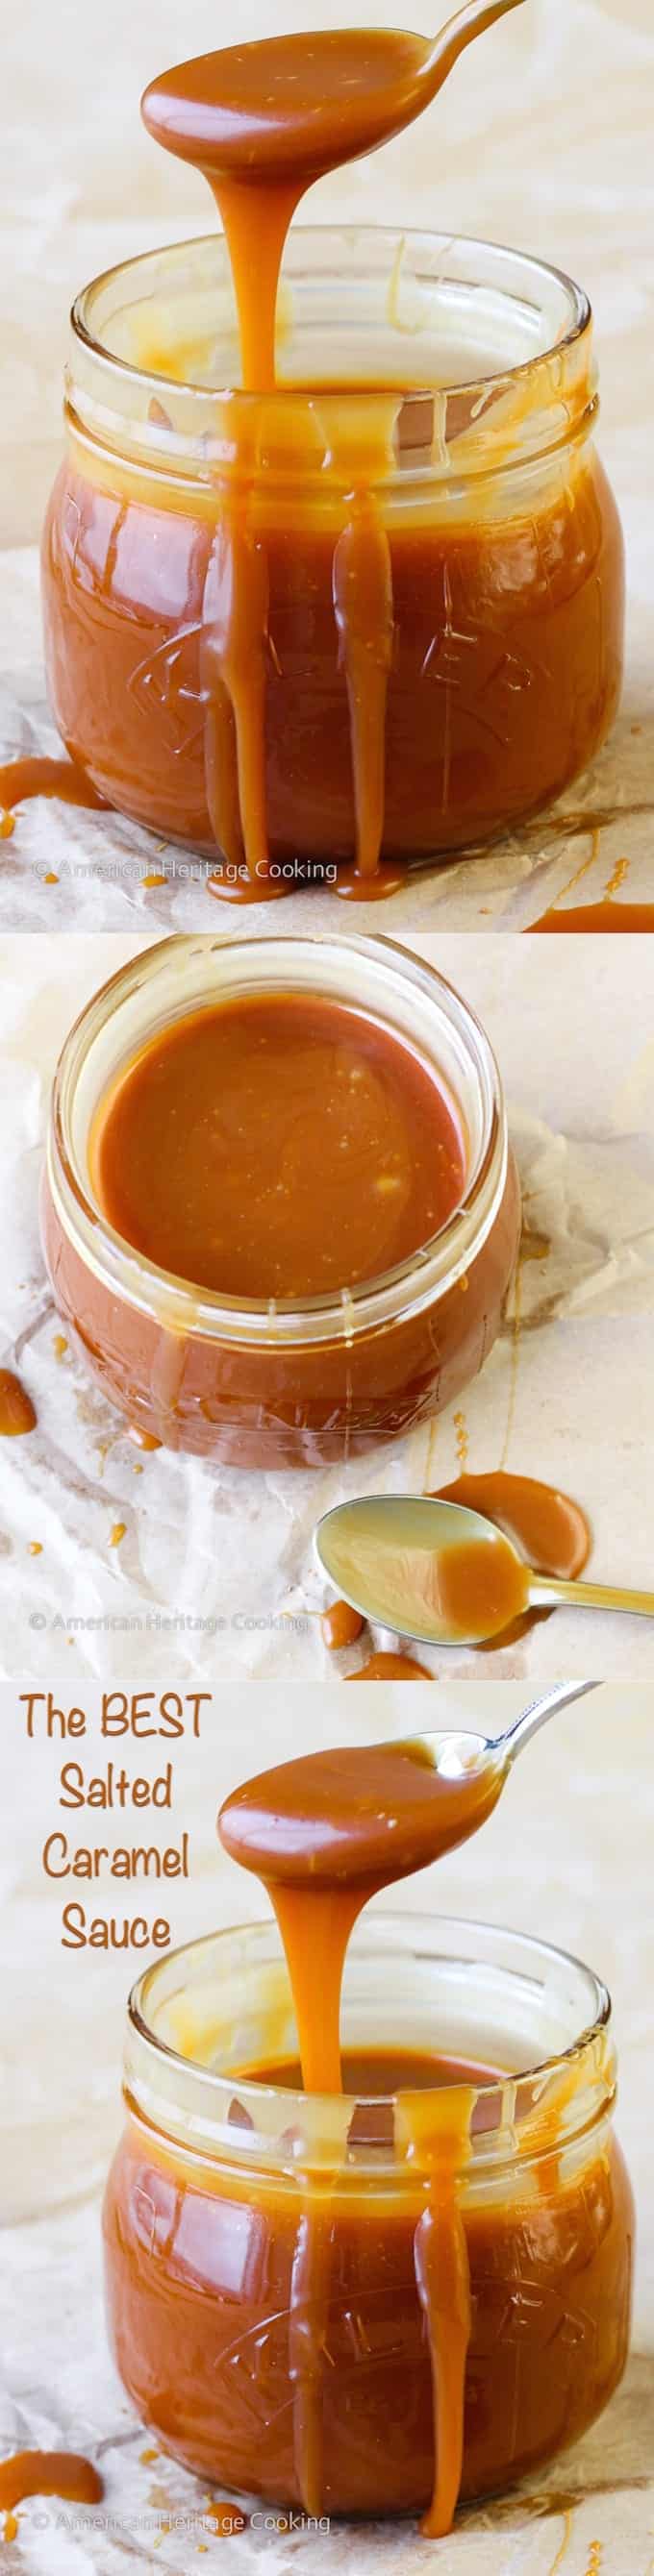 The BEST Homemade Salted Caramel Sauce